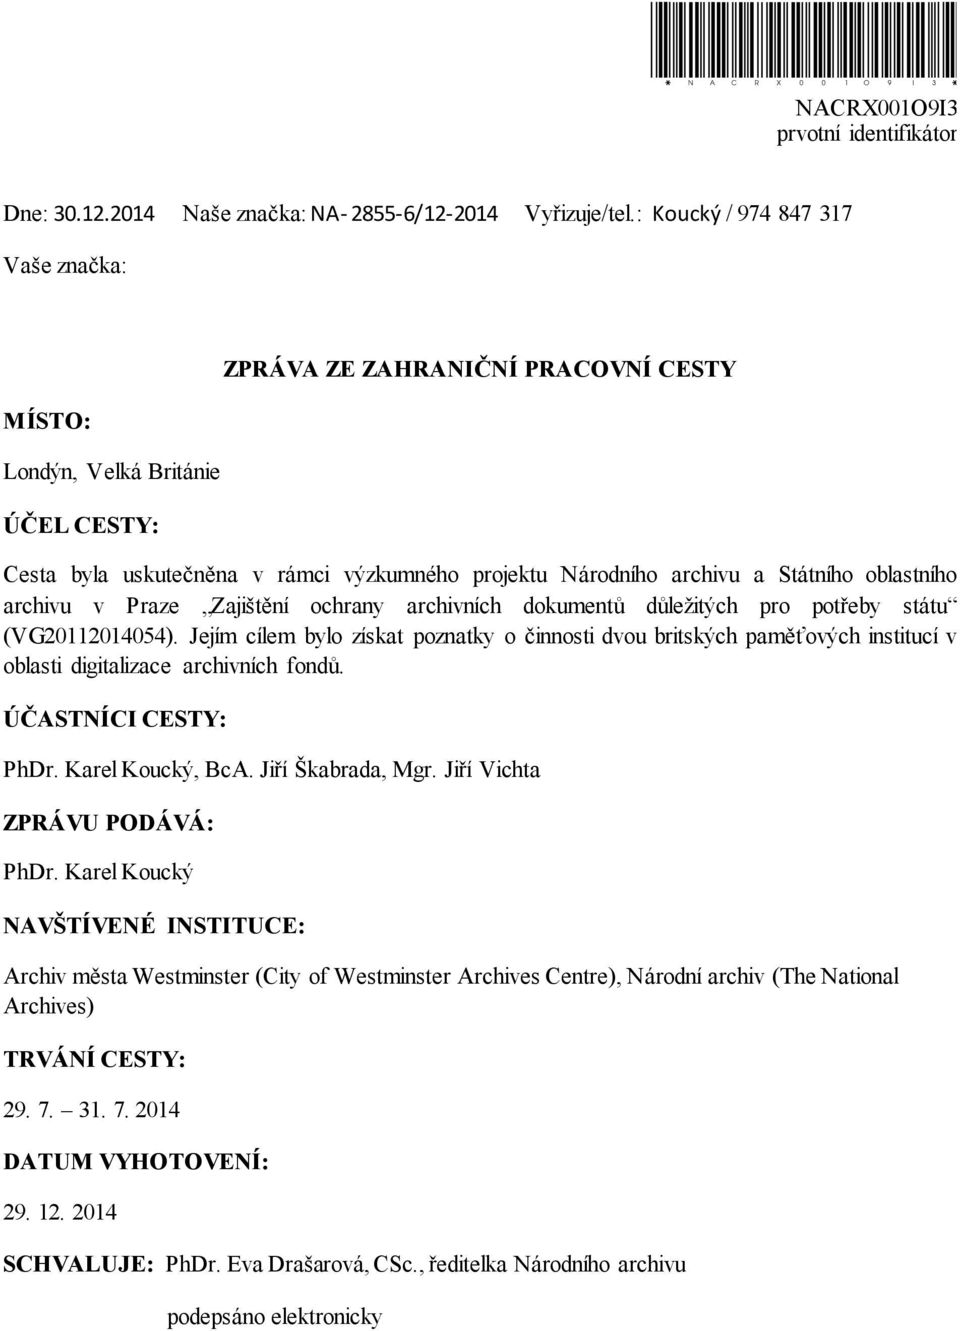 oblastního archivu v Praze Zajištění ochrany archivních dokumentů důležitých pro potřeby státu (VG20112014054).